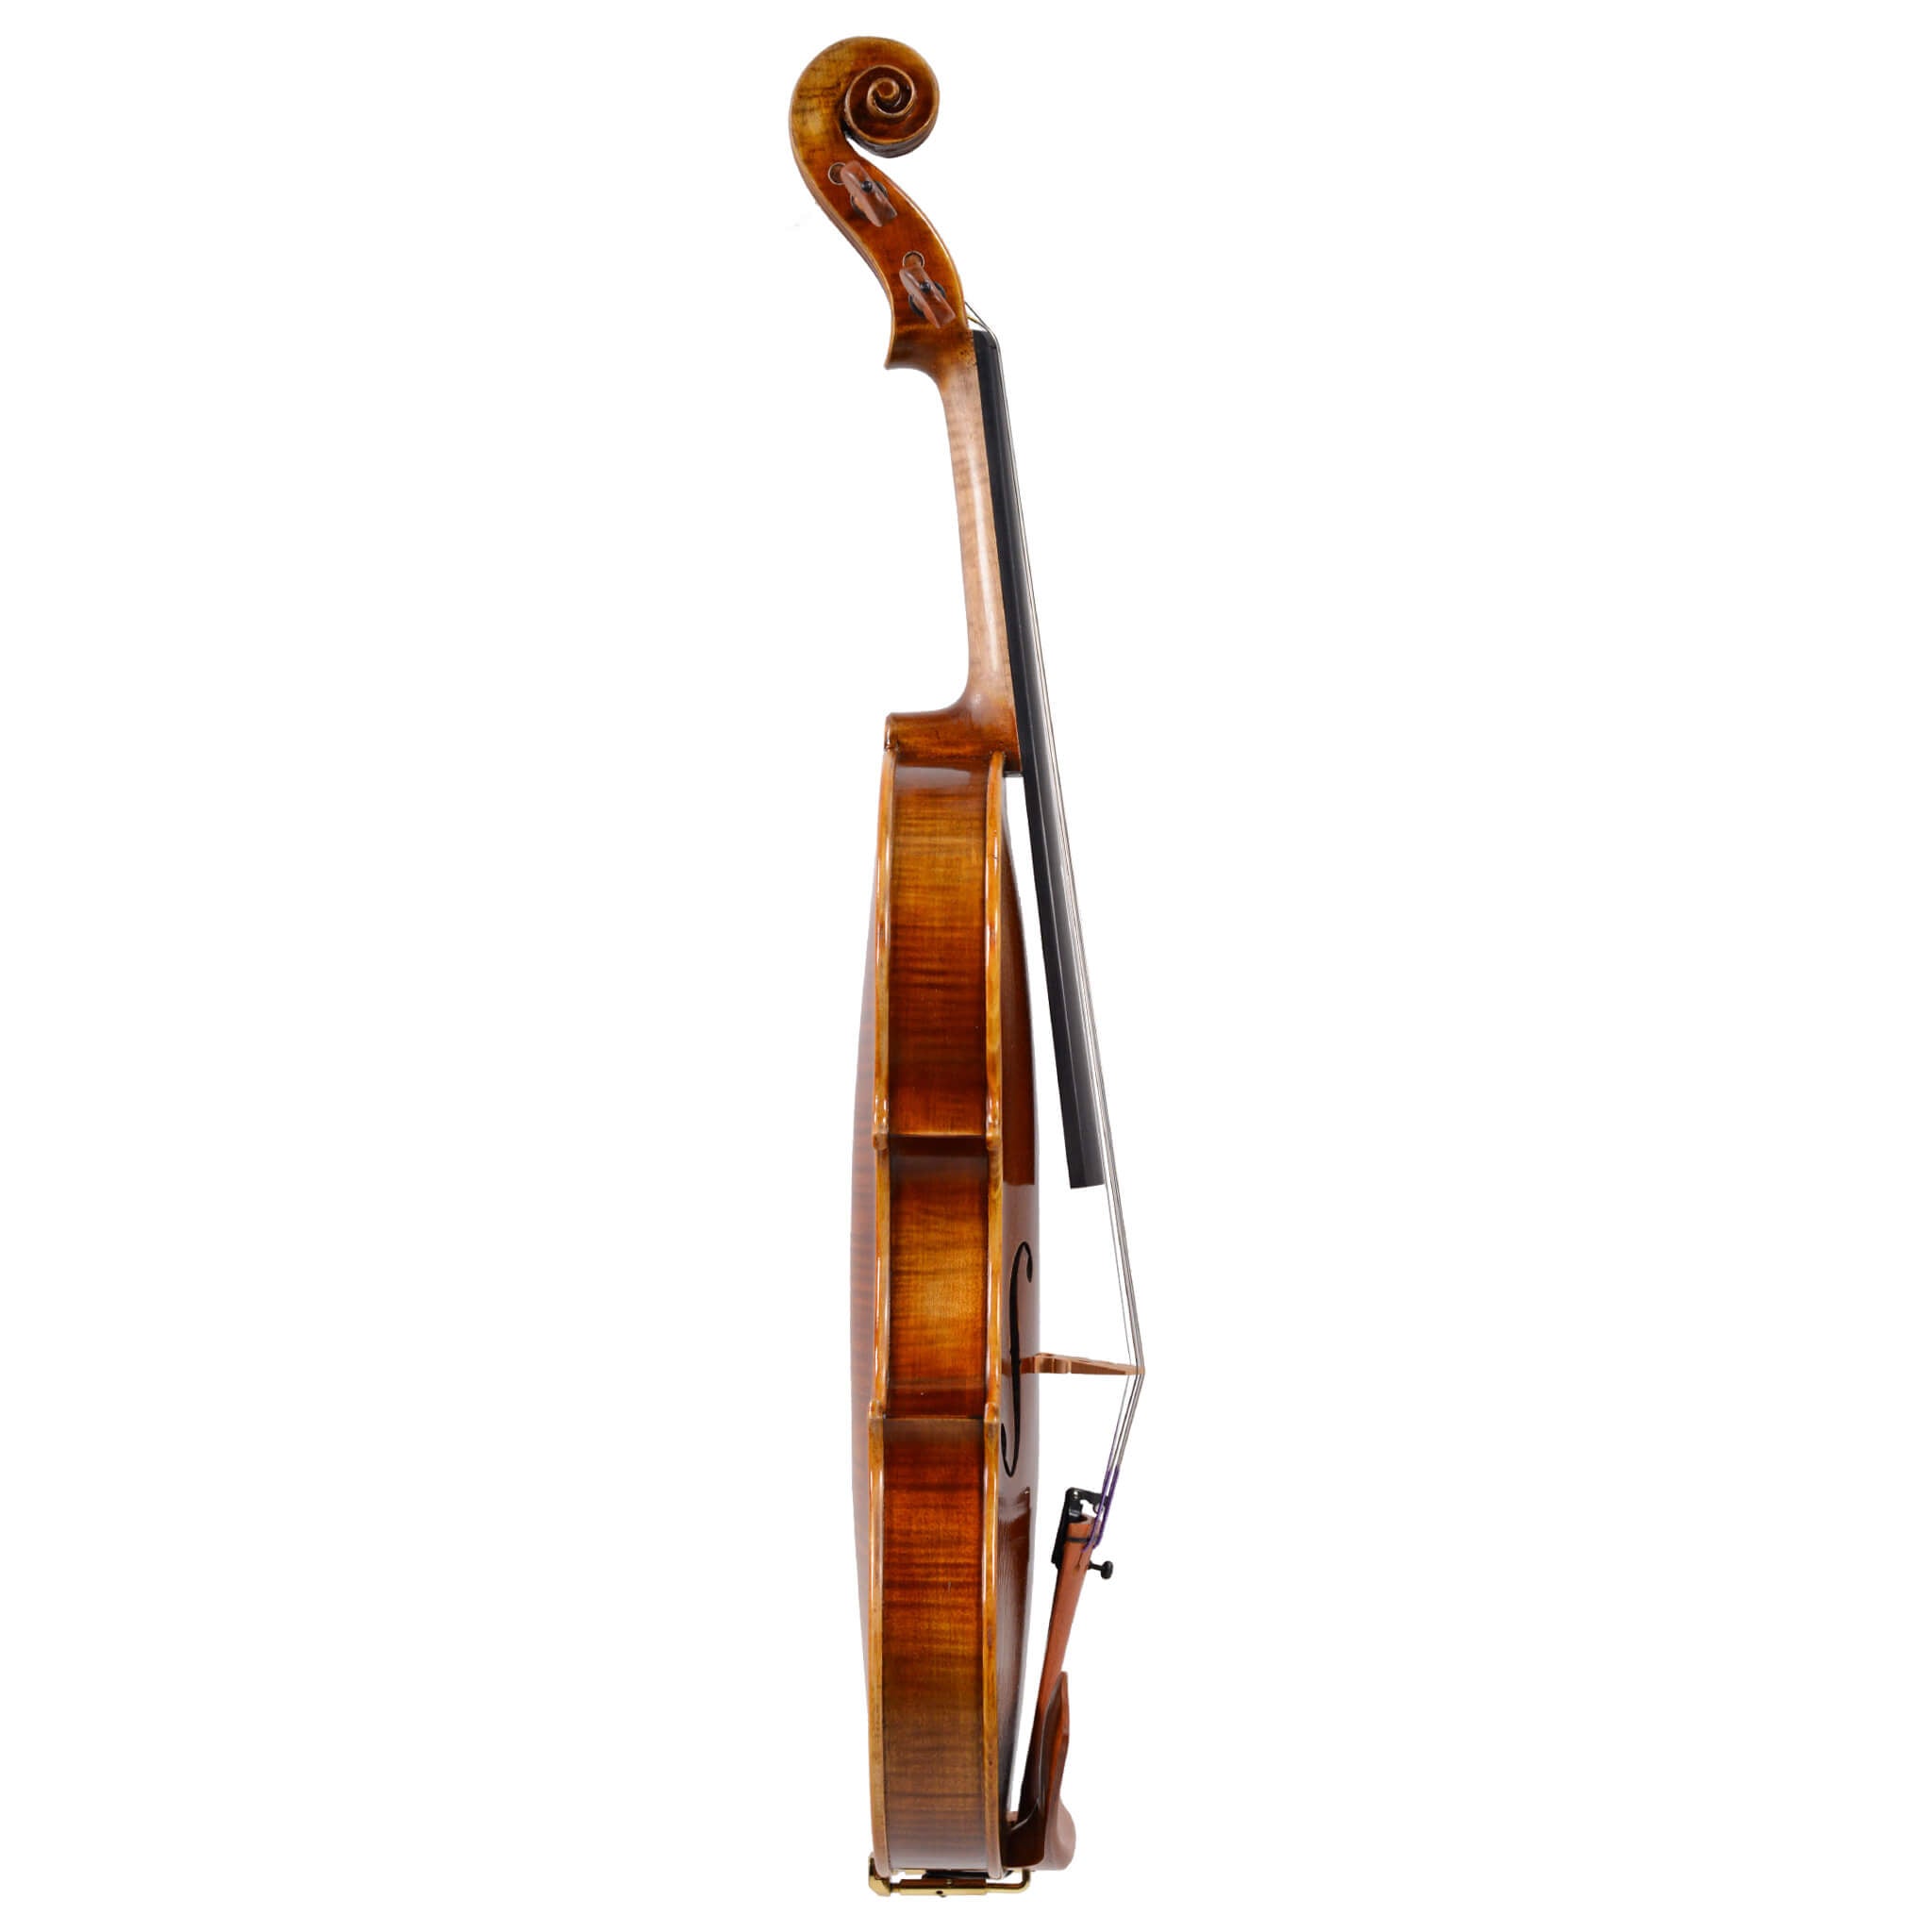 Fiddlerman Symphony Violin Outfit